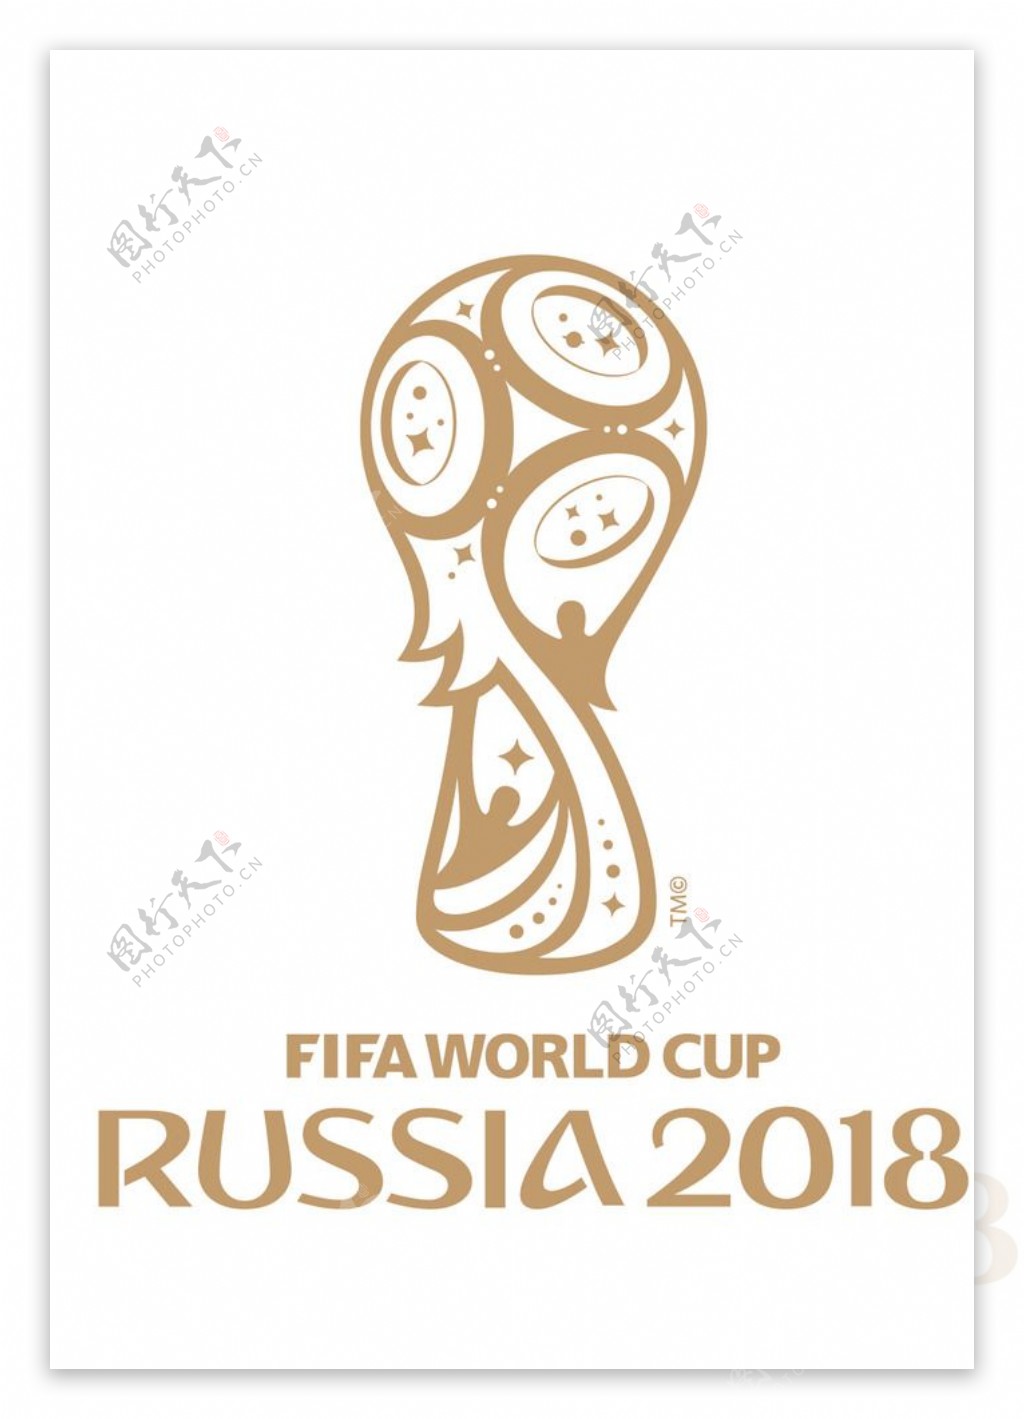 世界杯反白logo